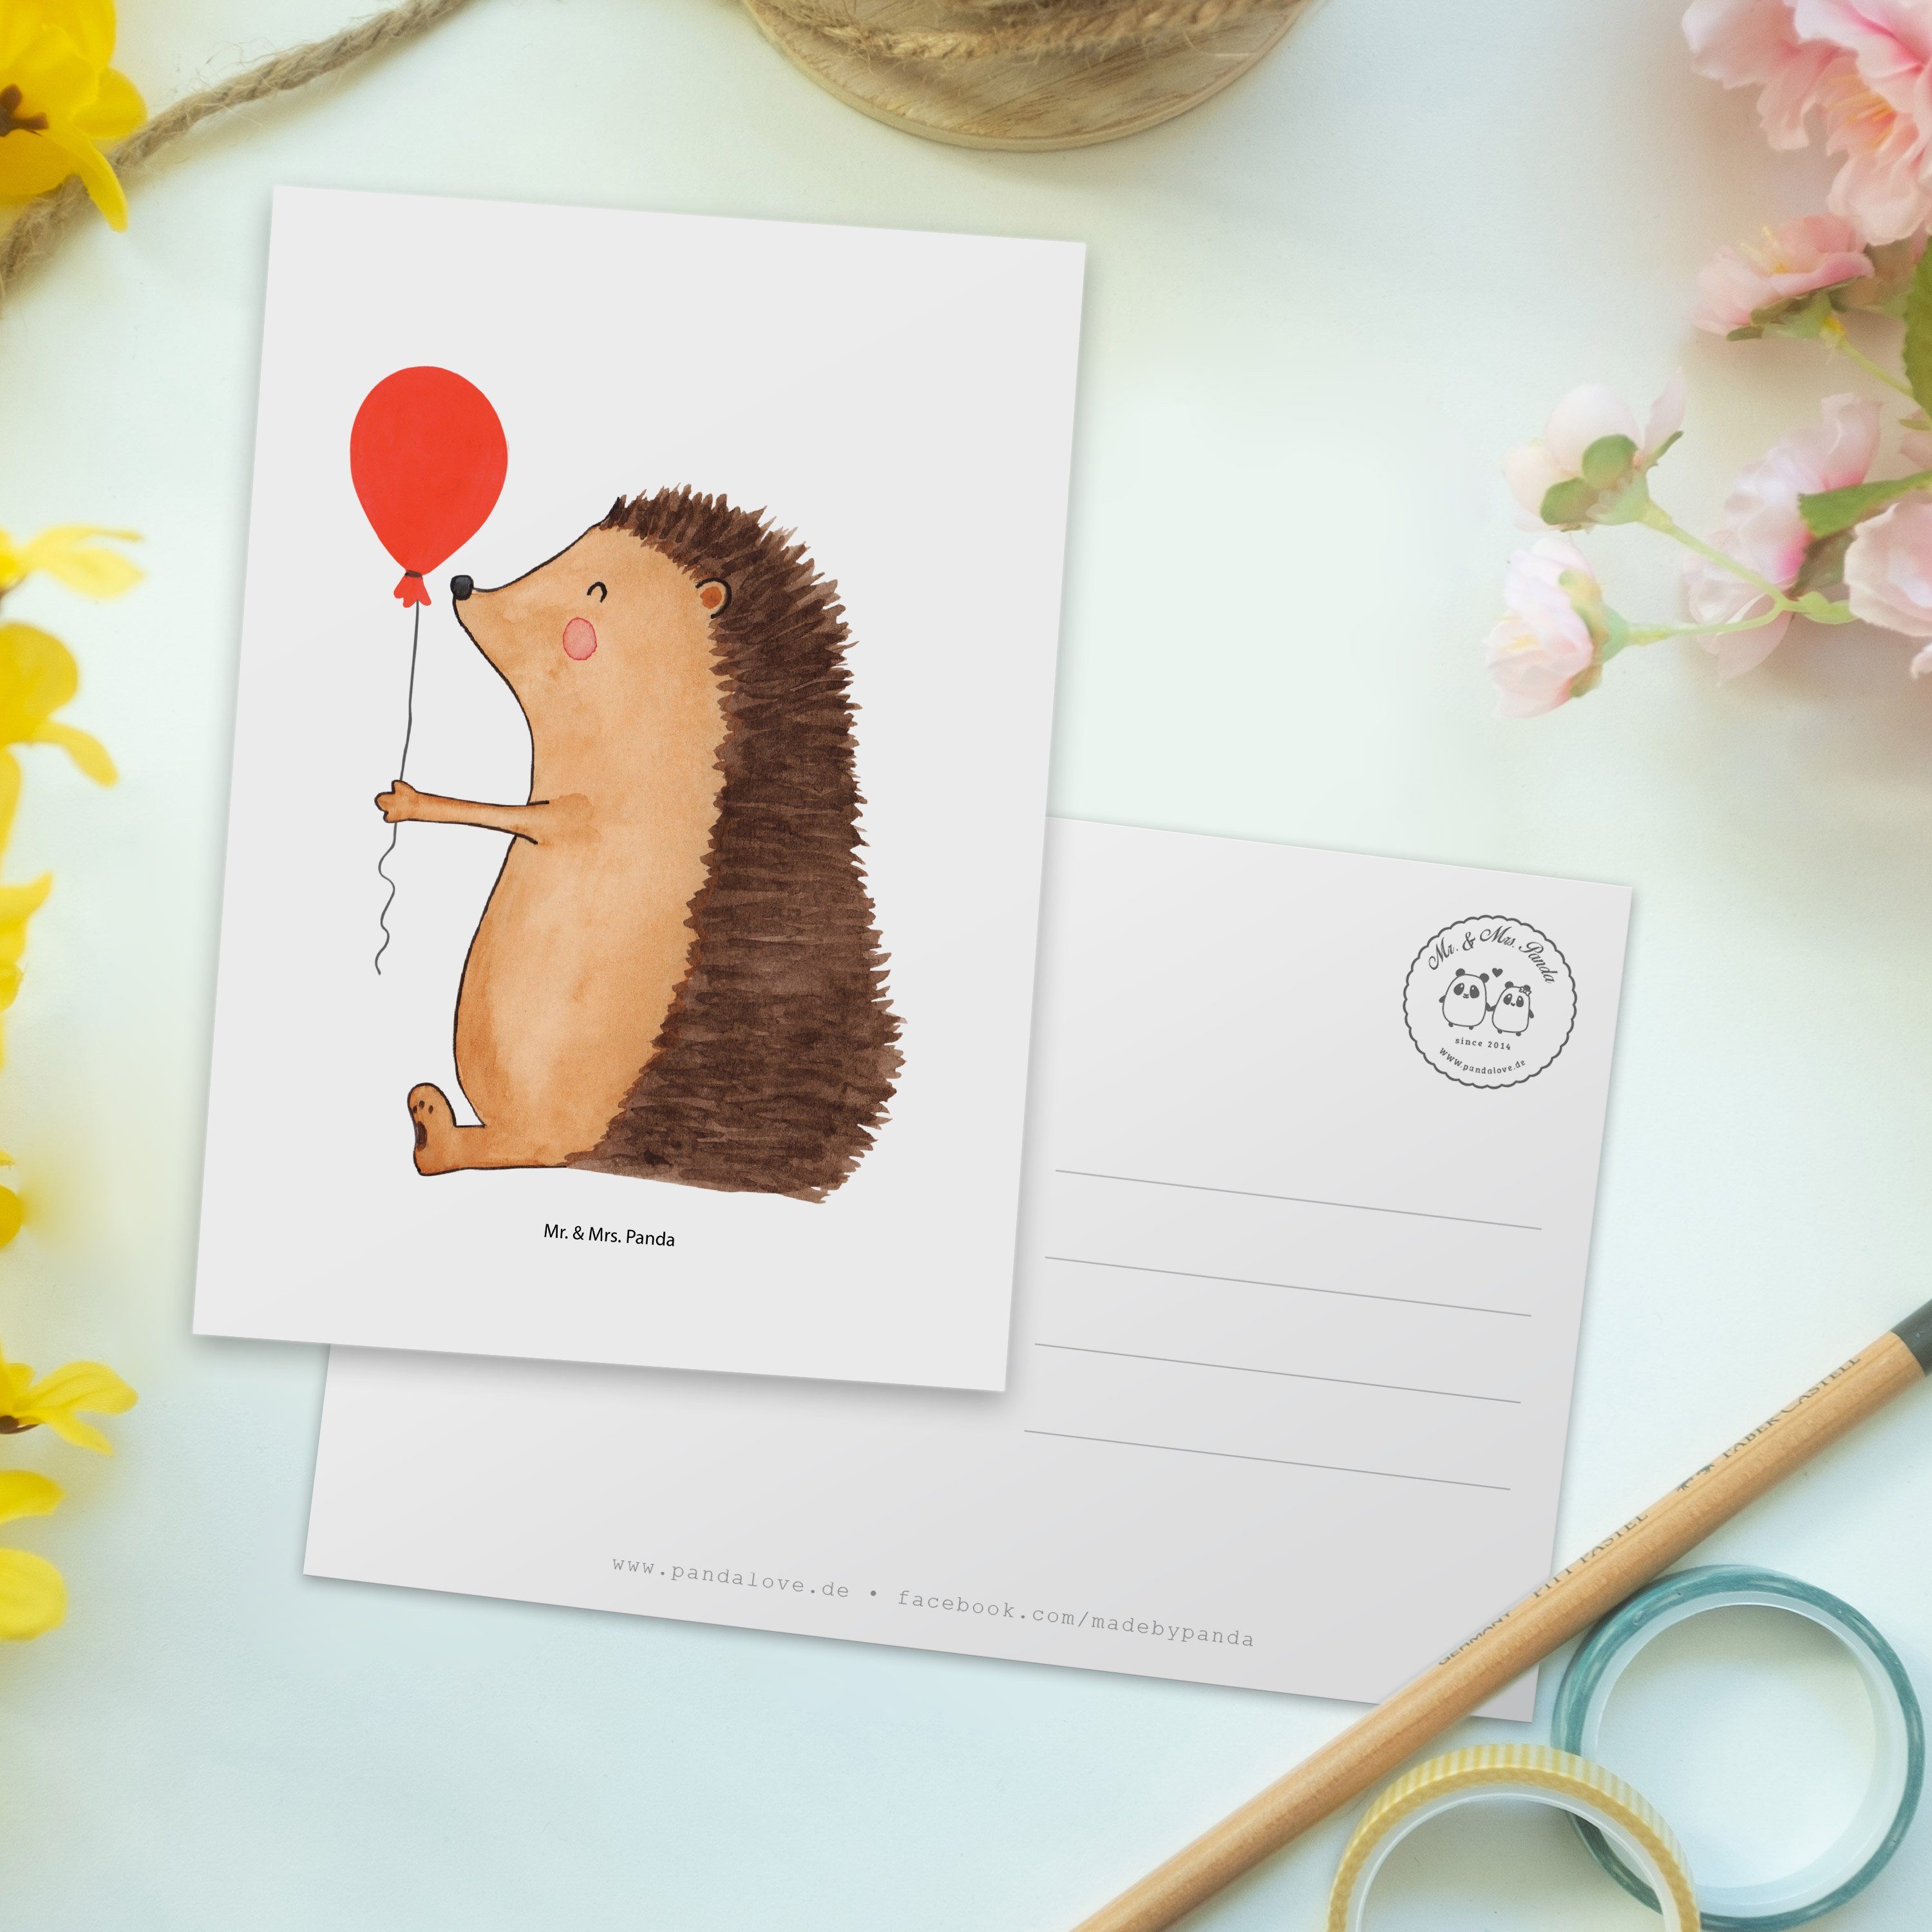 Mr. & Mrs. Geschenkkarte, Geschenk, Luftballon Gute Postkarte mit - Weiß Einladung, - Panda Igel